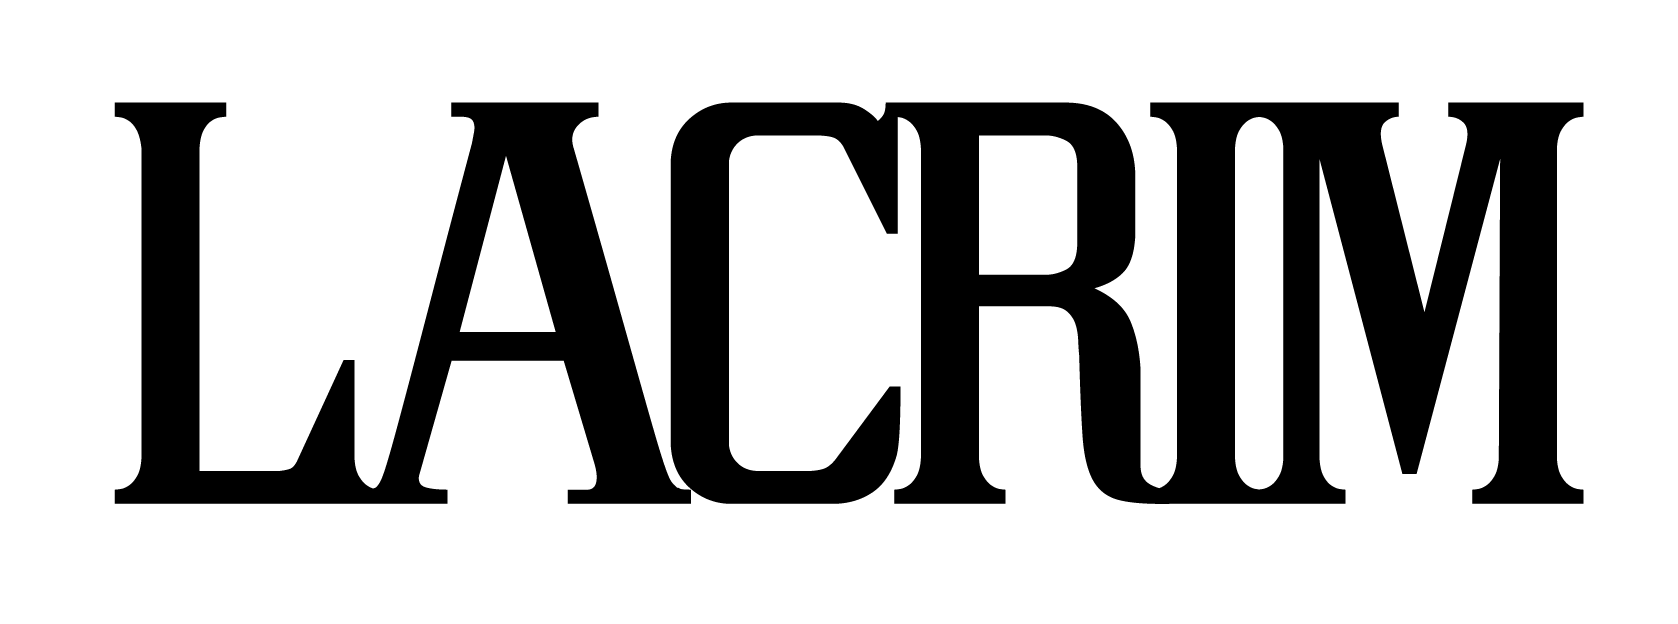 Lacrim logo